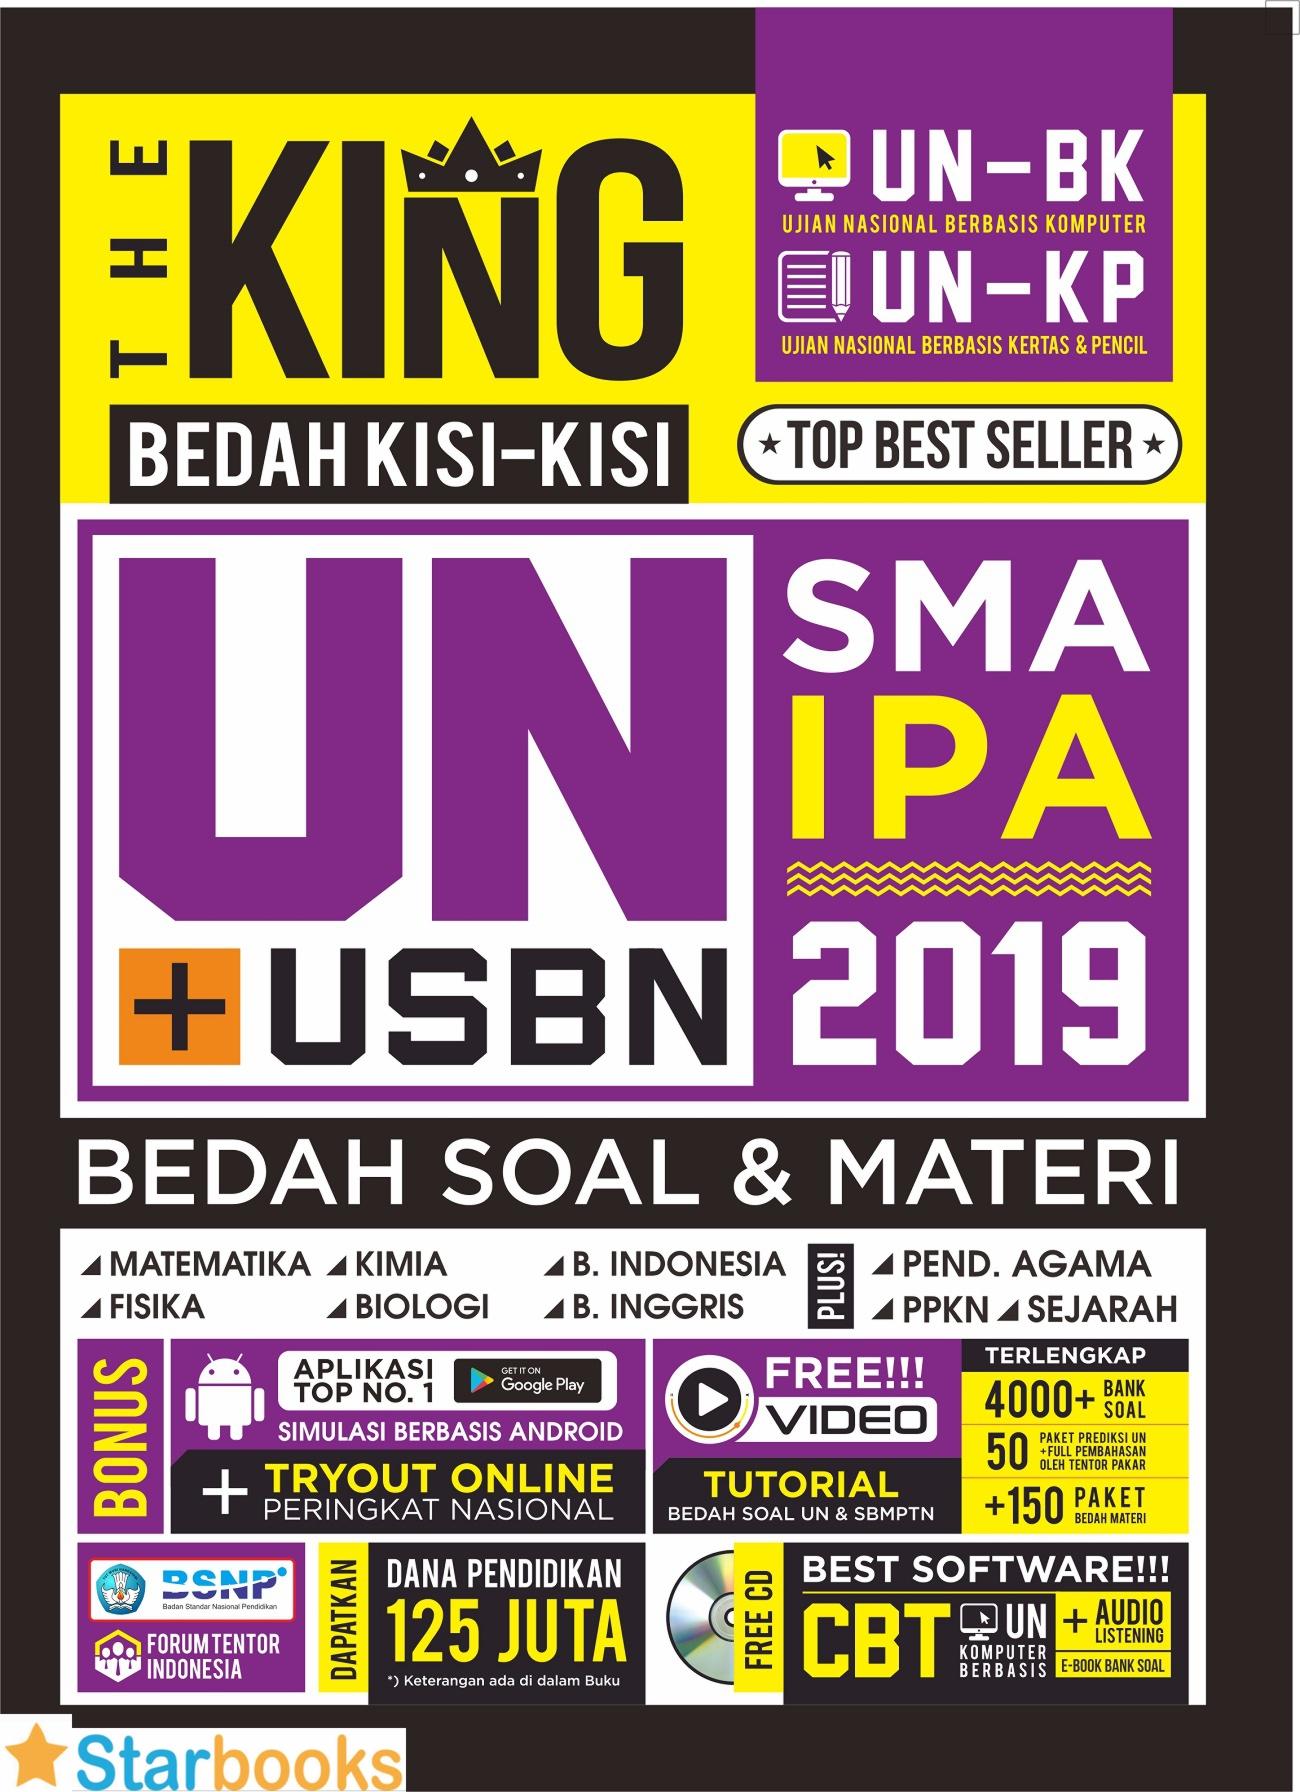 THE KING BEDAH KISI2 UN SMA IPA 2019 & CD